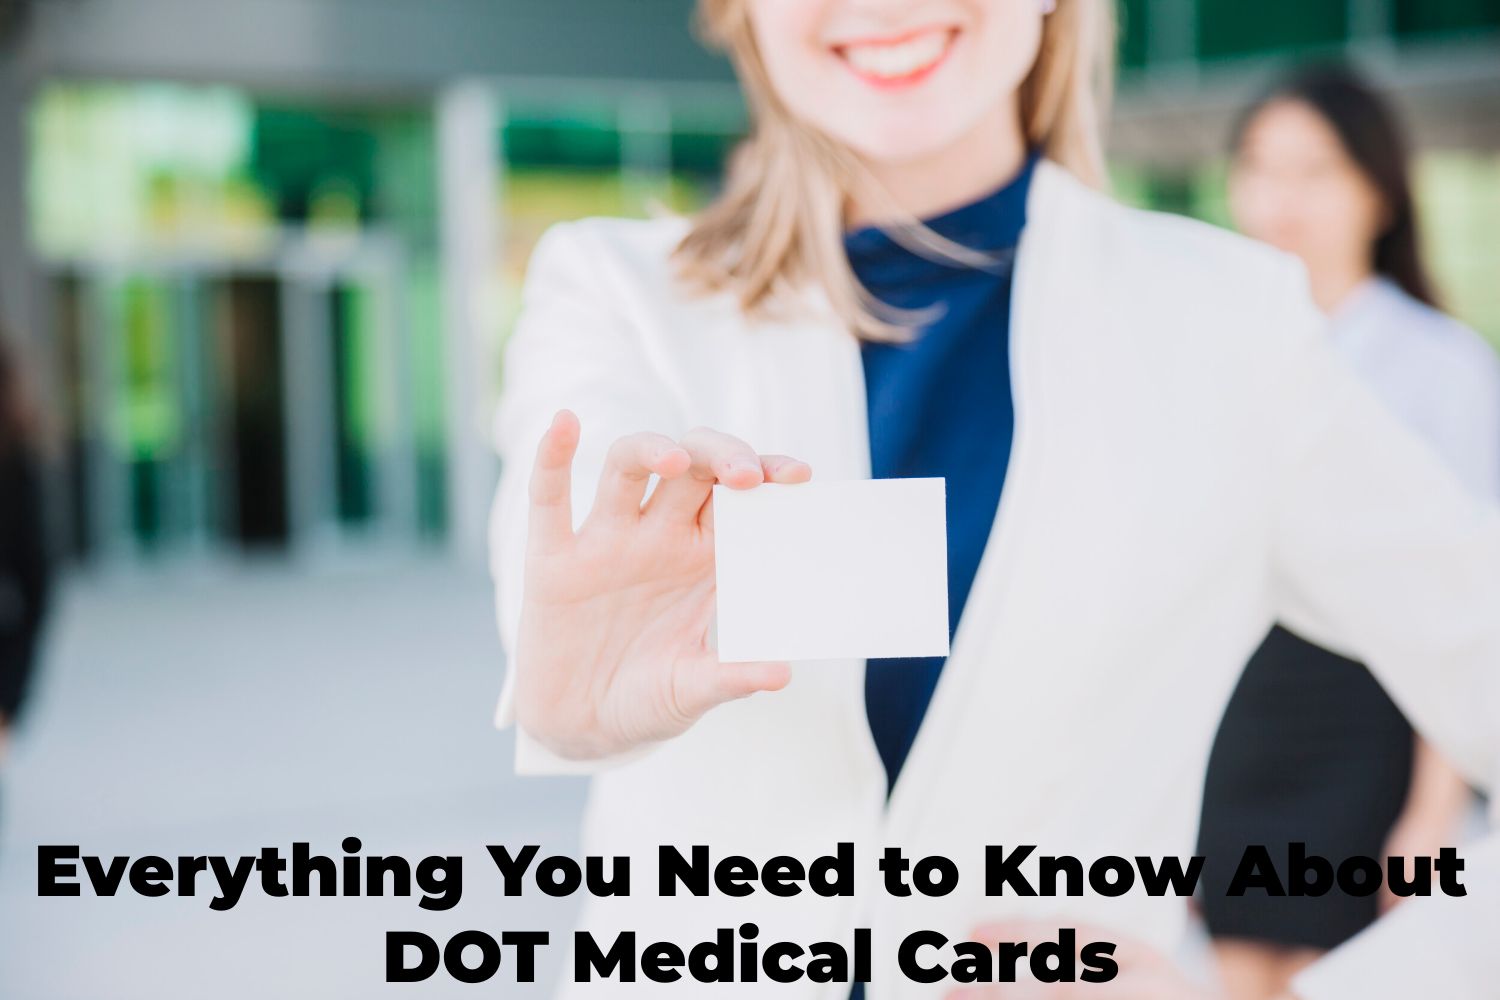 DOT Medical Cards